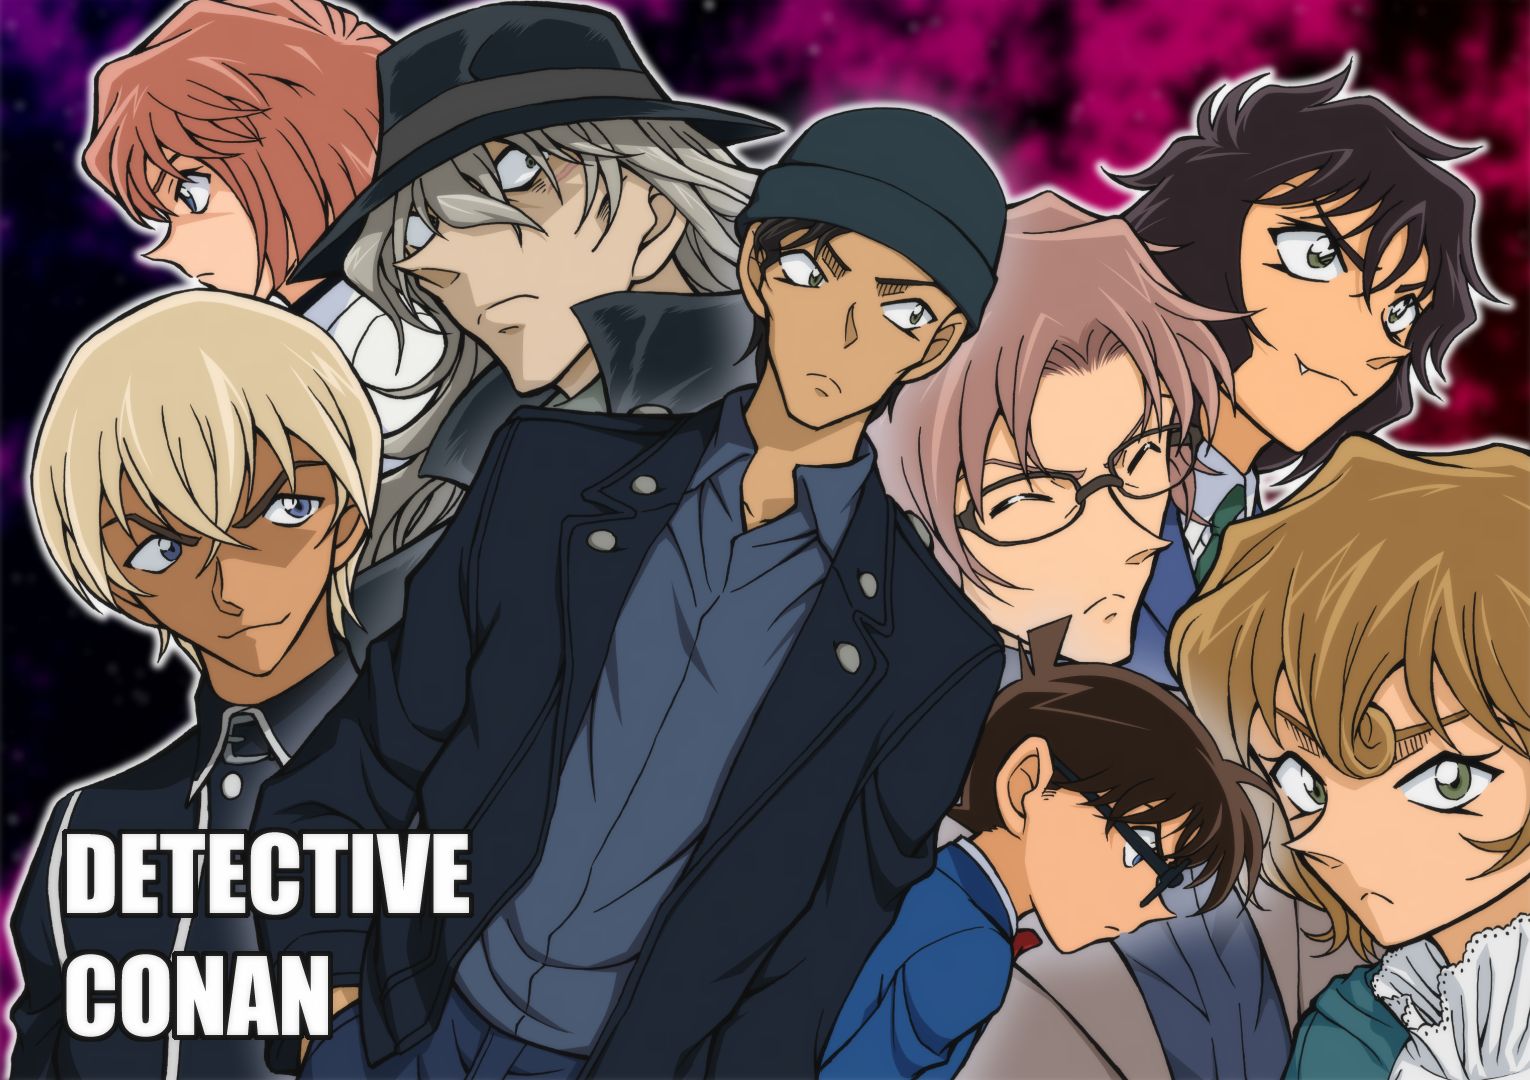 Kuro no Soshiki (Black Organization) Conan Anime Image Board